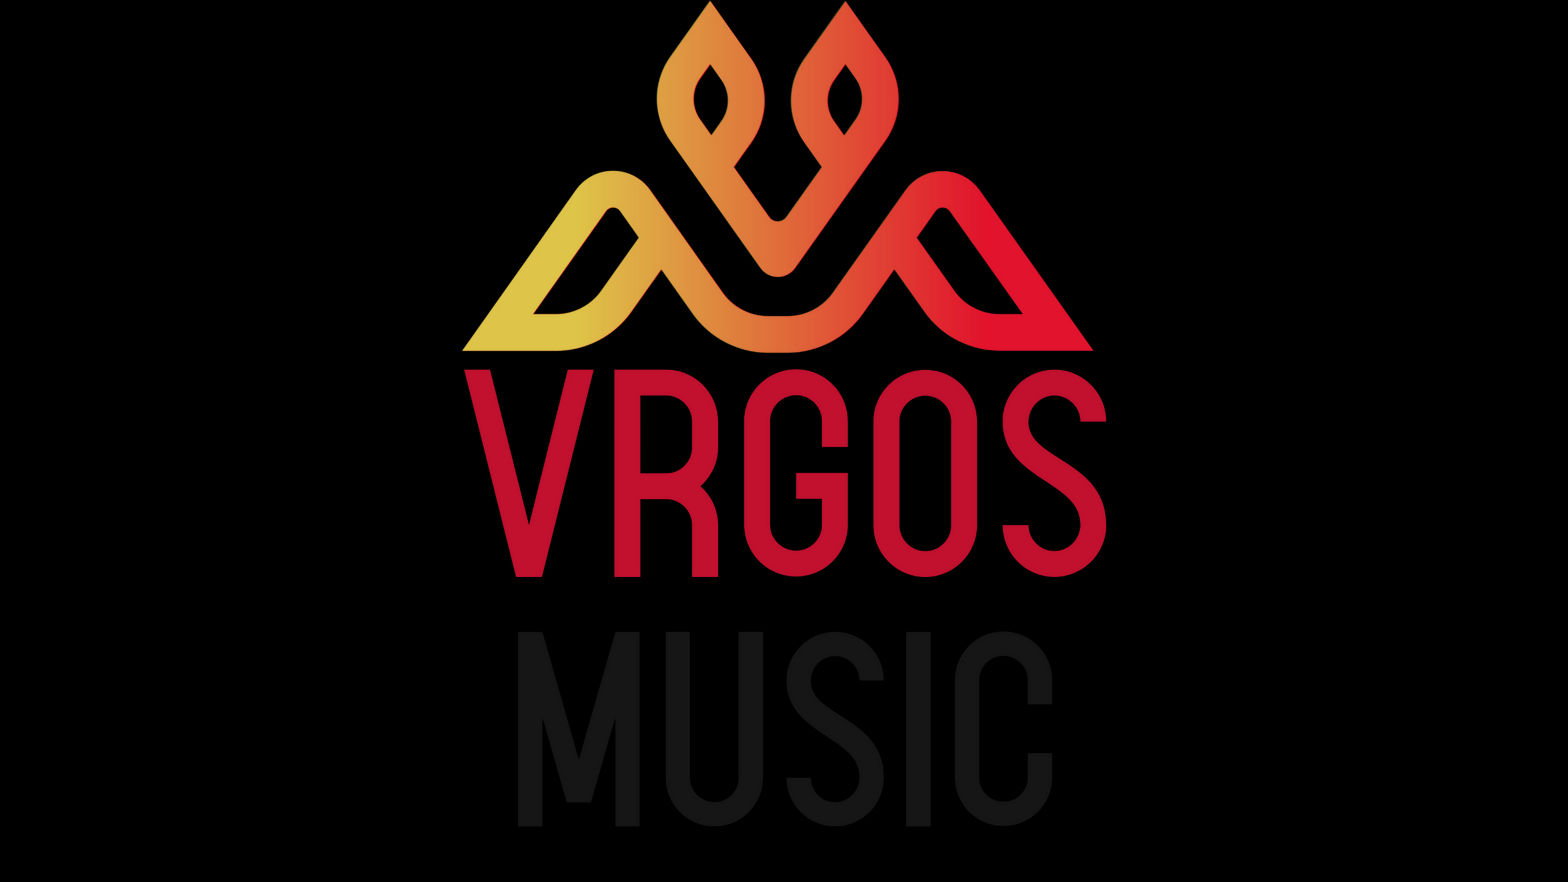 VRGOS Worship & Praise Music